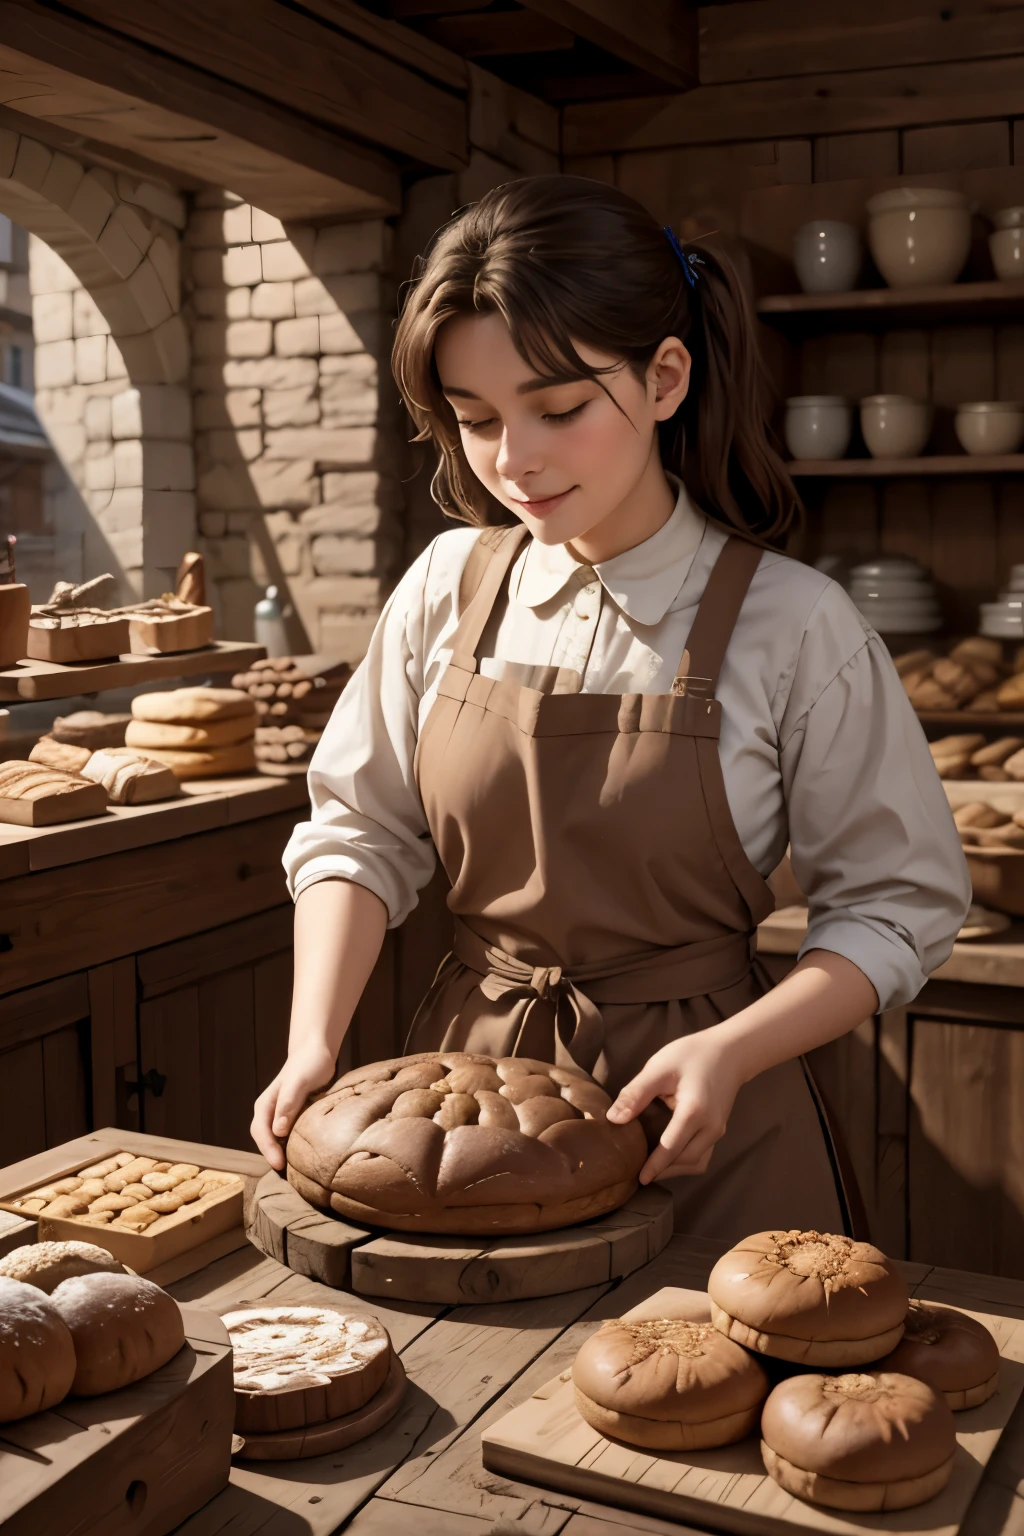 최고의 품질, 걸작,중세 초기 도시의 빵집